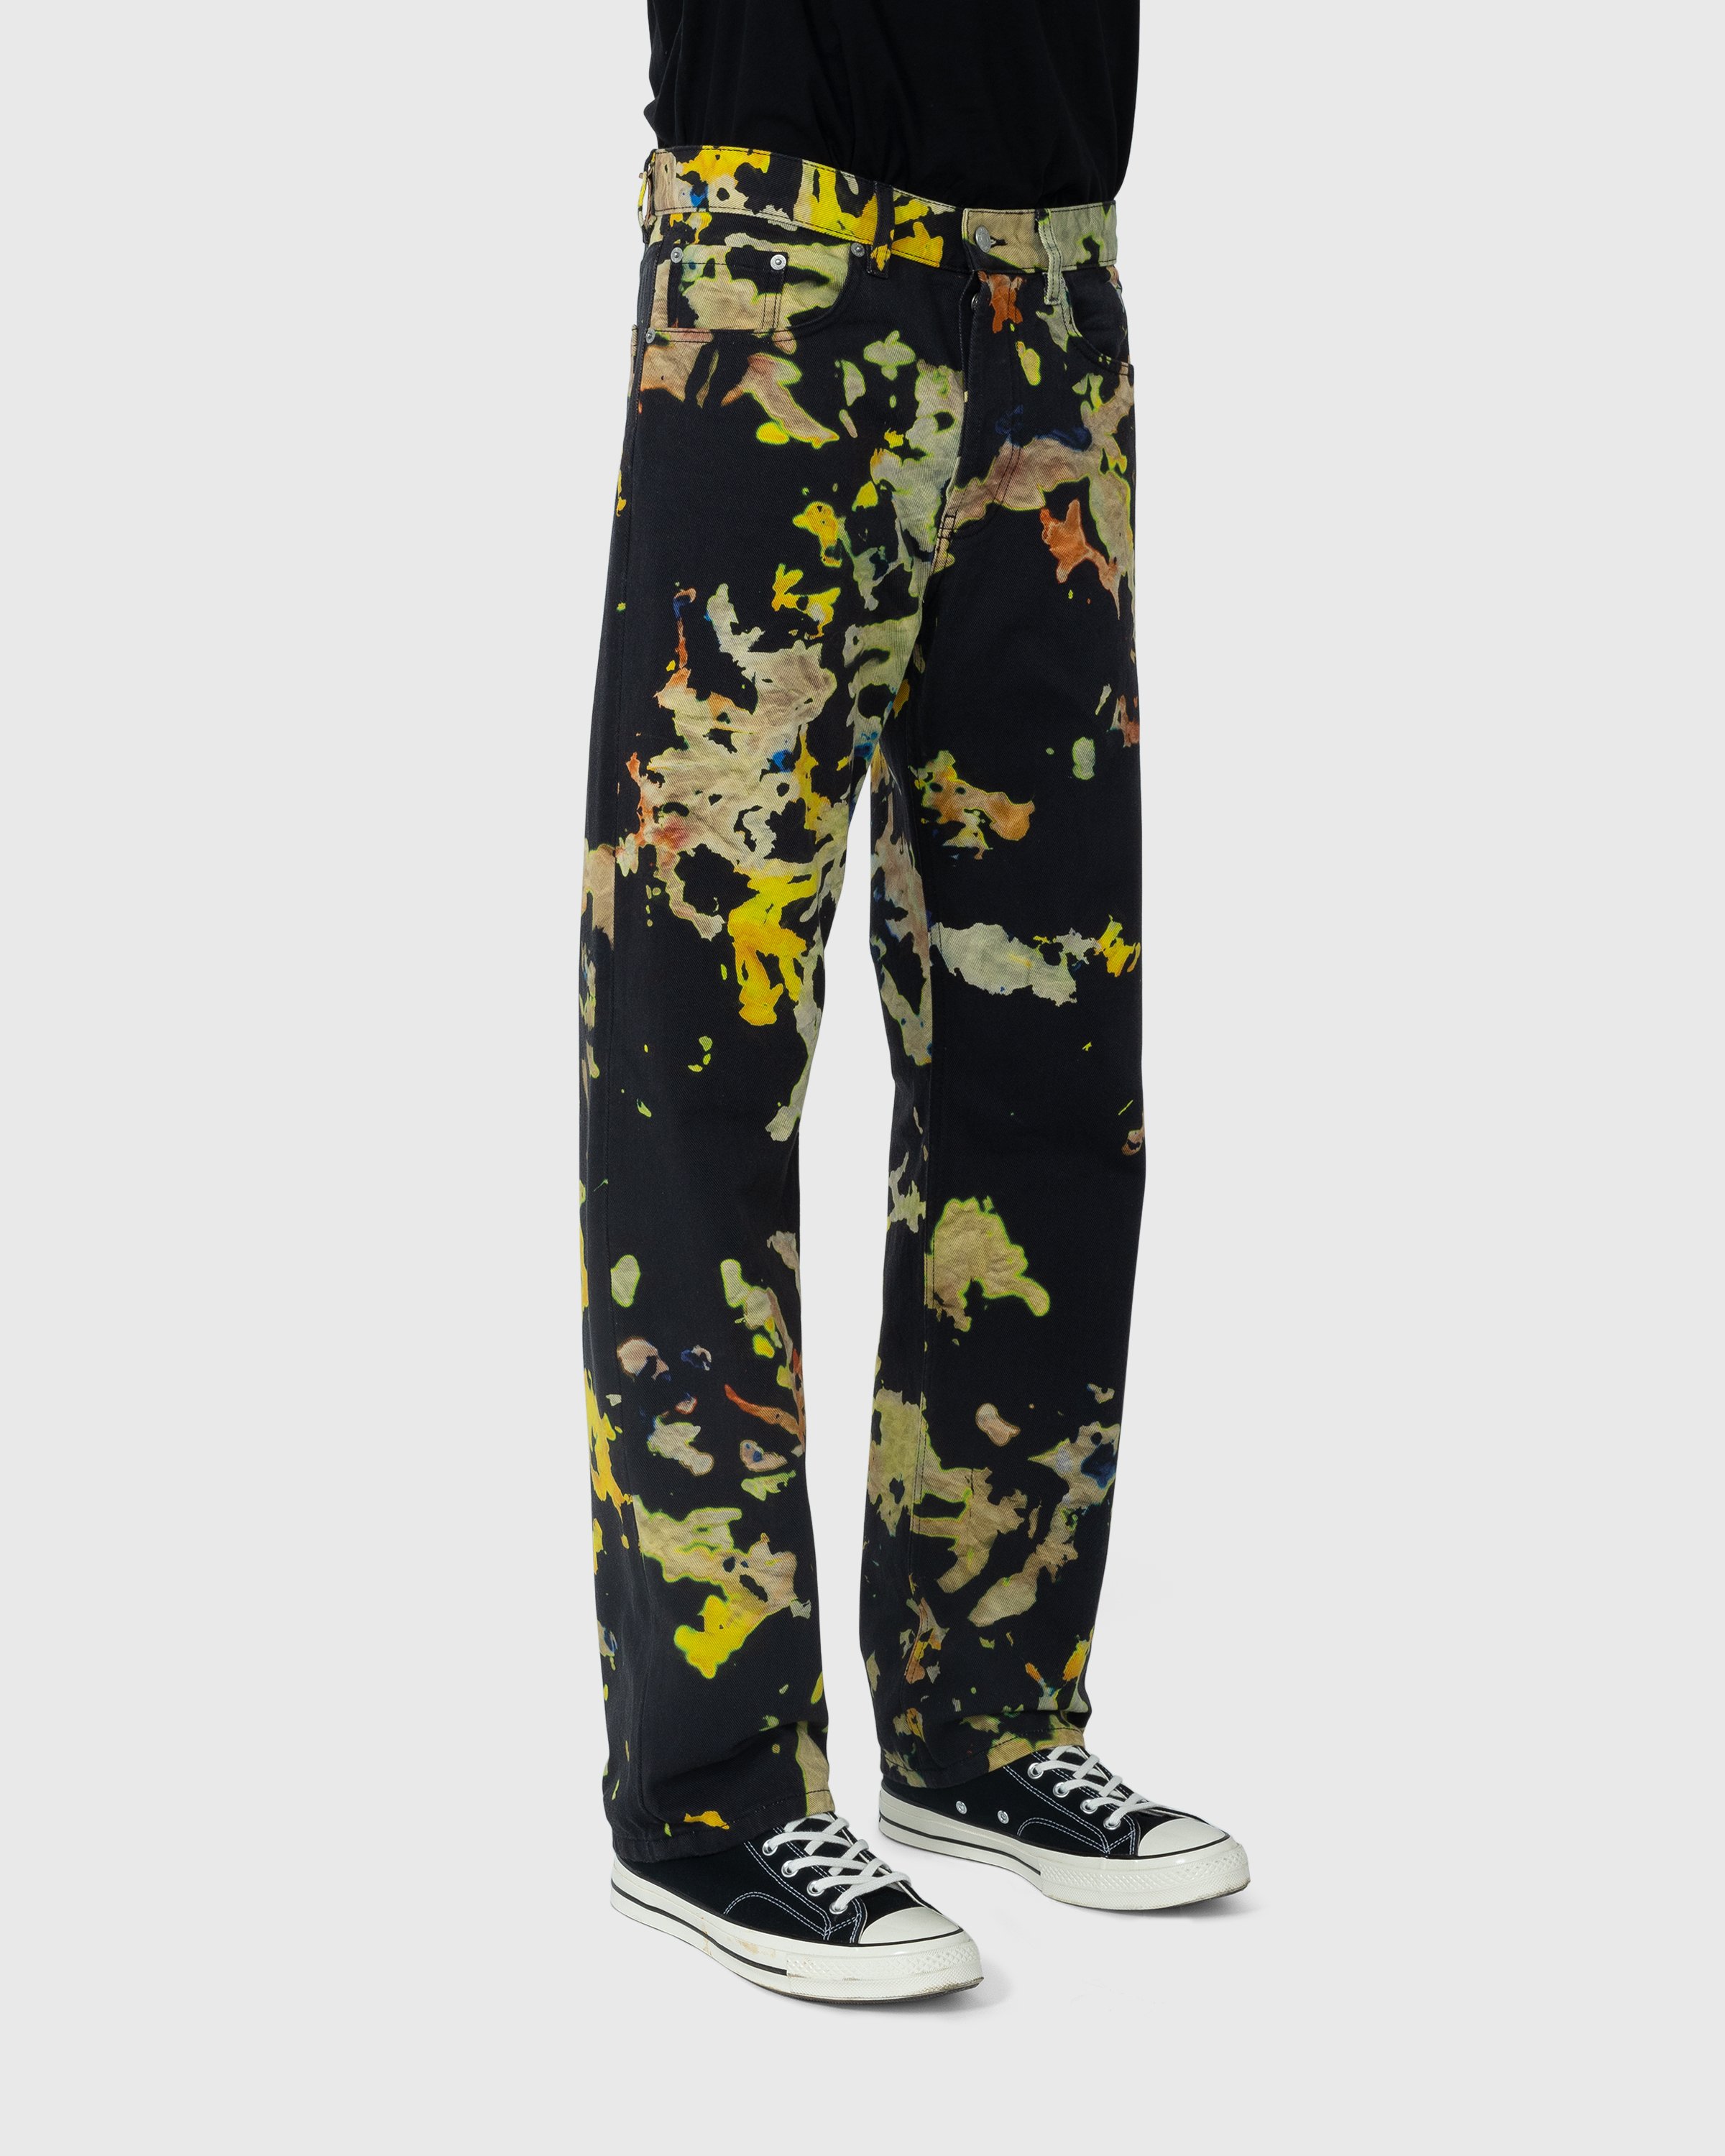 Dries van Noten - Panthero Pants - Clothing - Multi - Image 4